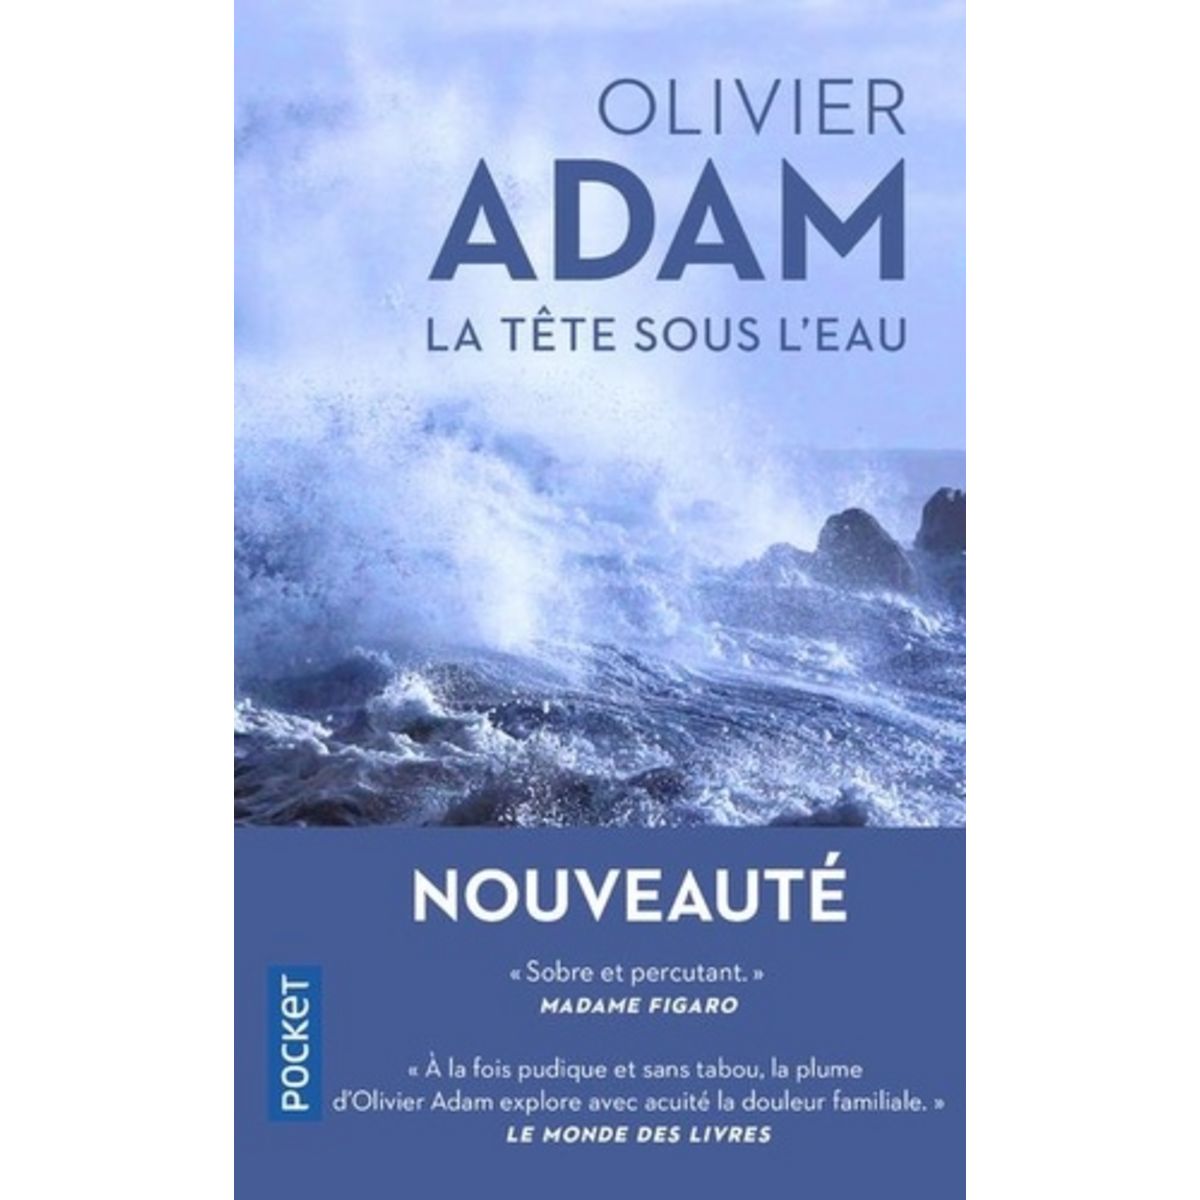  LA TETE SOUS L'EAU, Adam Olivier